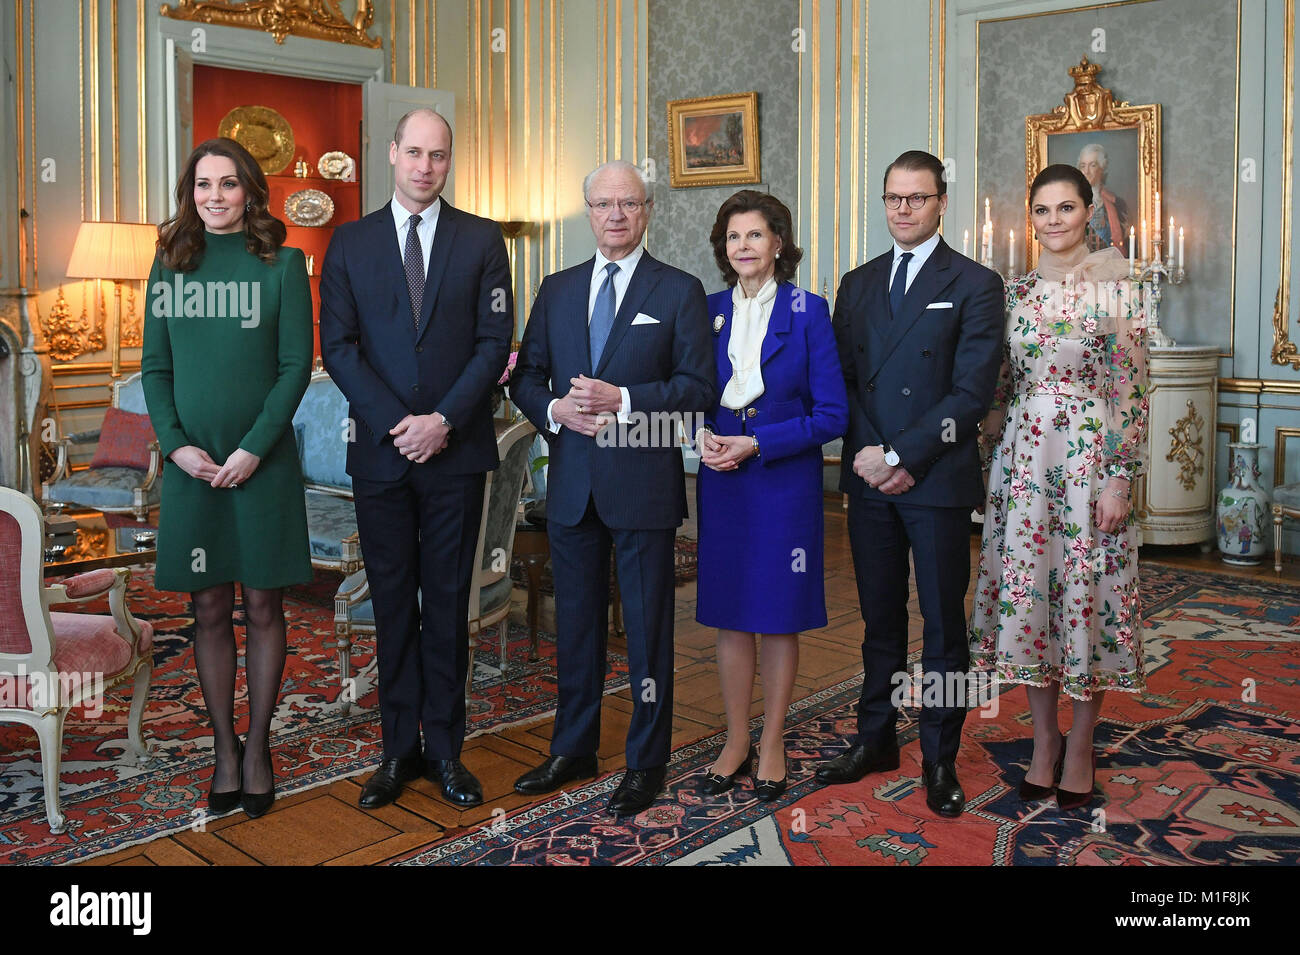 Il Duca e la Duchessa di Cambridge sono accolti da Re Carl XVI Gustaf, Regina Silvia di Svezia, Prince Daniel e Victoria, la Principessa di Svezia davanti ad un pranzo presso il Palazzo Reale di Stoccolma il primo giorno della loro visita in Svezia. Foto Stock